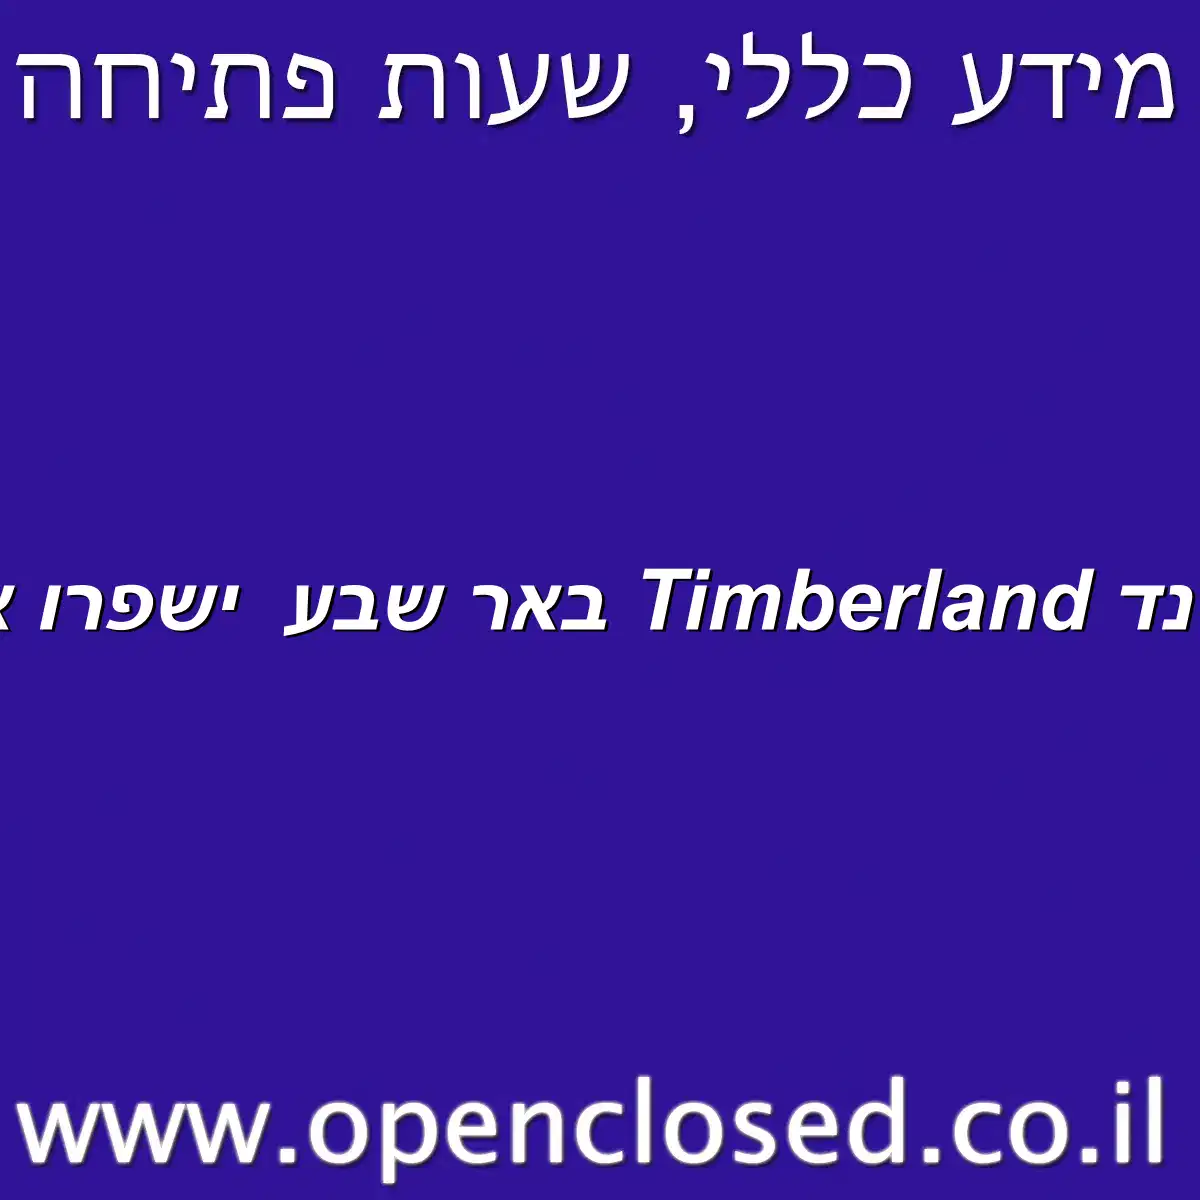 טימברלנד Timberland באר שבע ישפרו אאוטלט